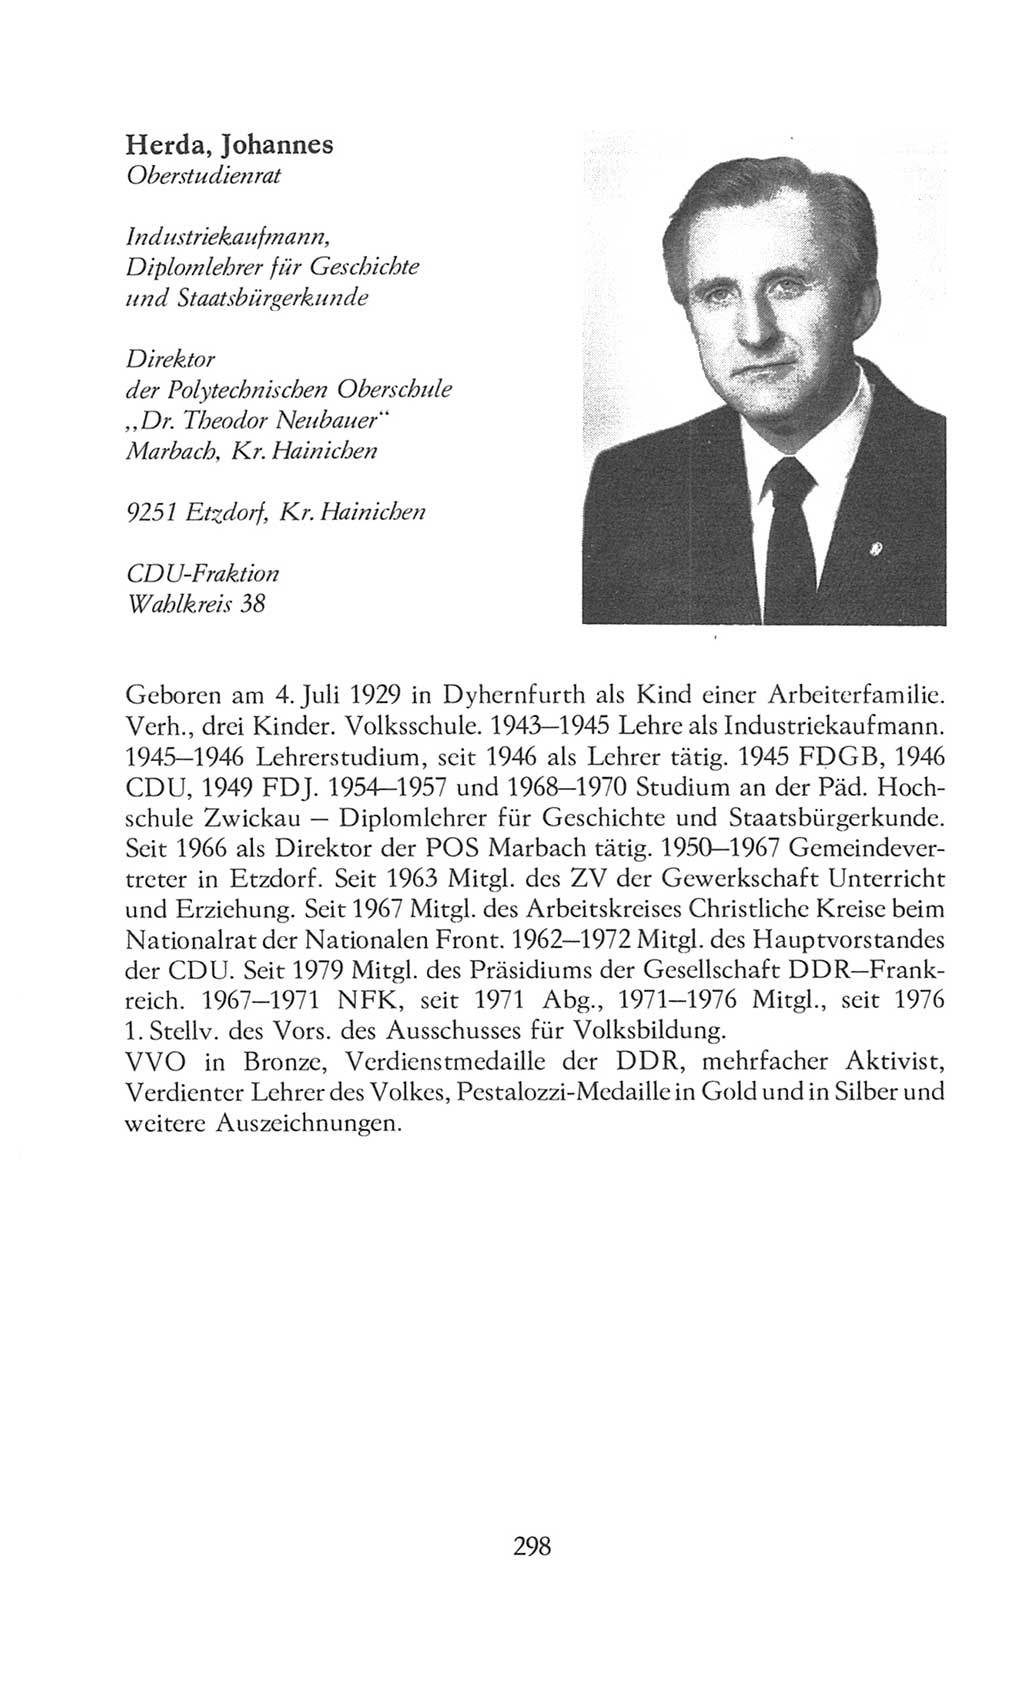 Volkskammer (VK) der Deutschen Demokratischen Republik (DDR), 8. Wahlperiode 1981-1986, Seite 298 (VK. DDR 8. WP. 1981-1986, S. 298)